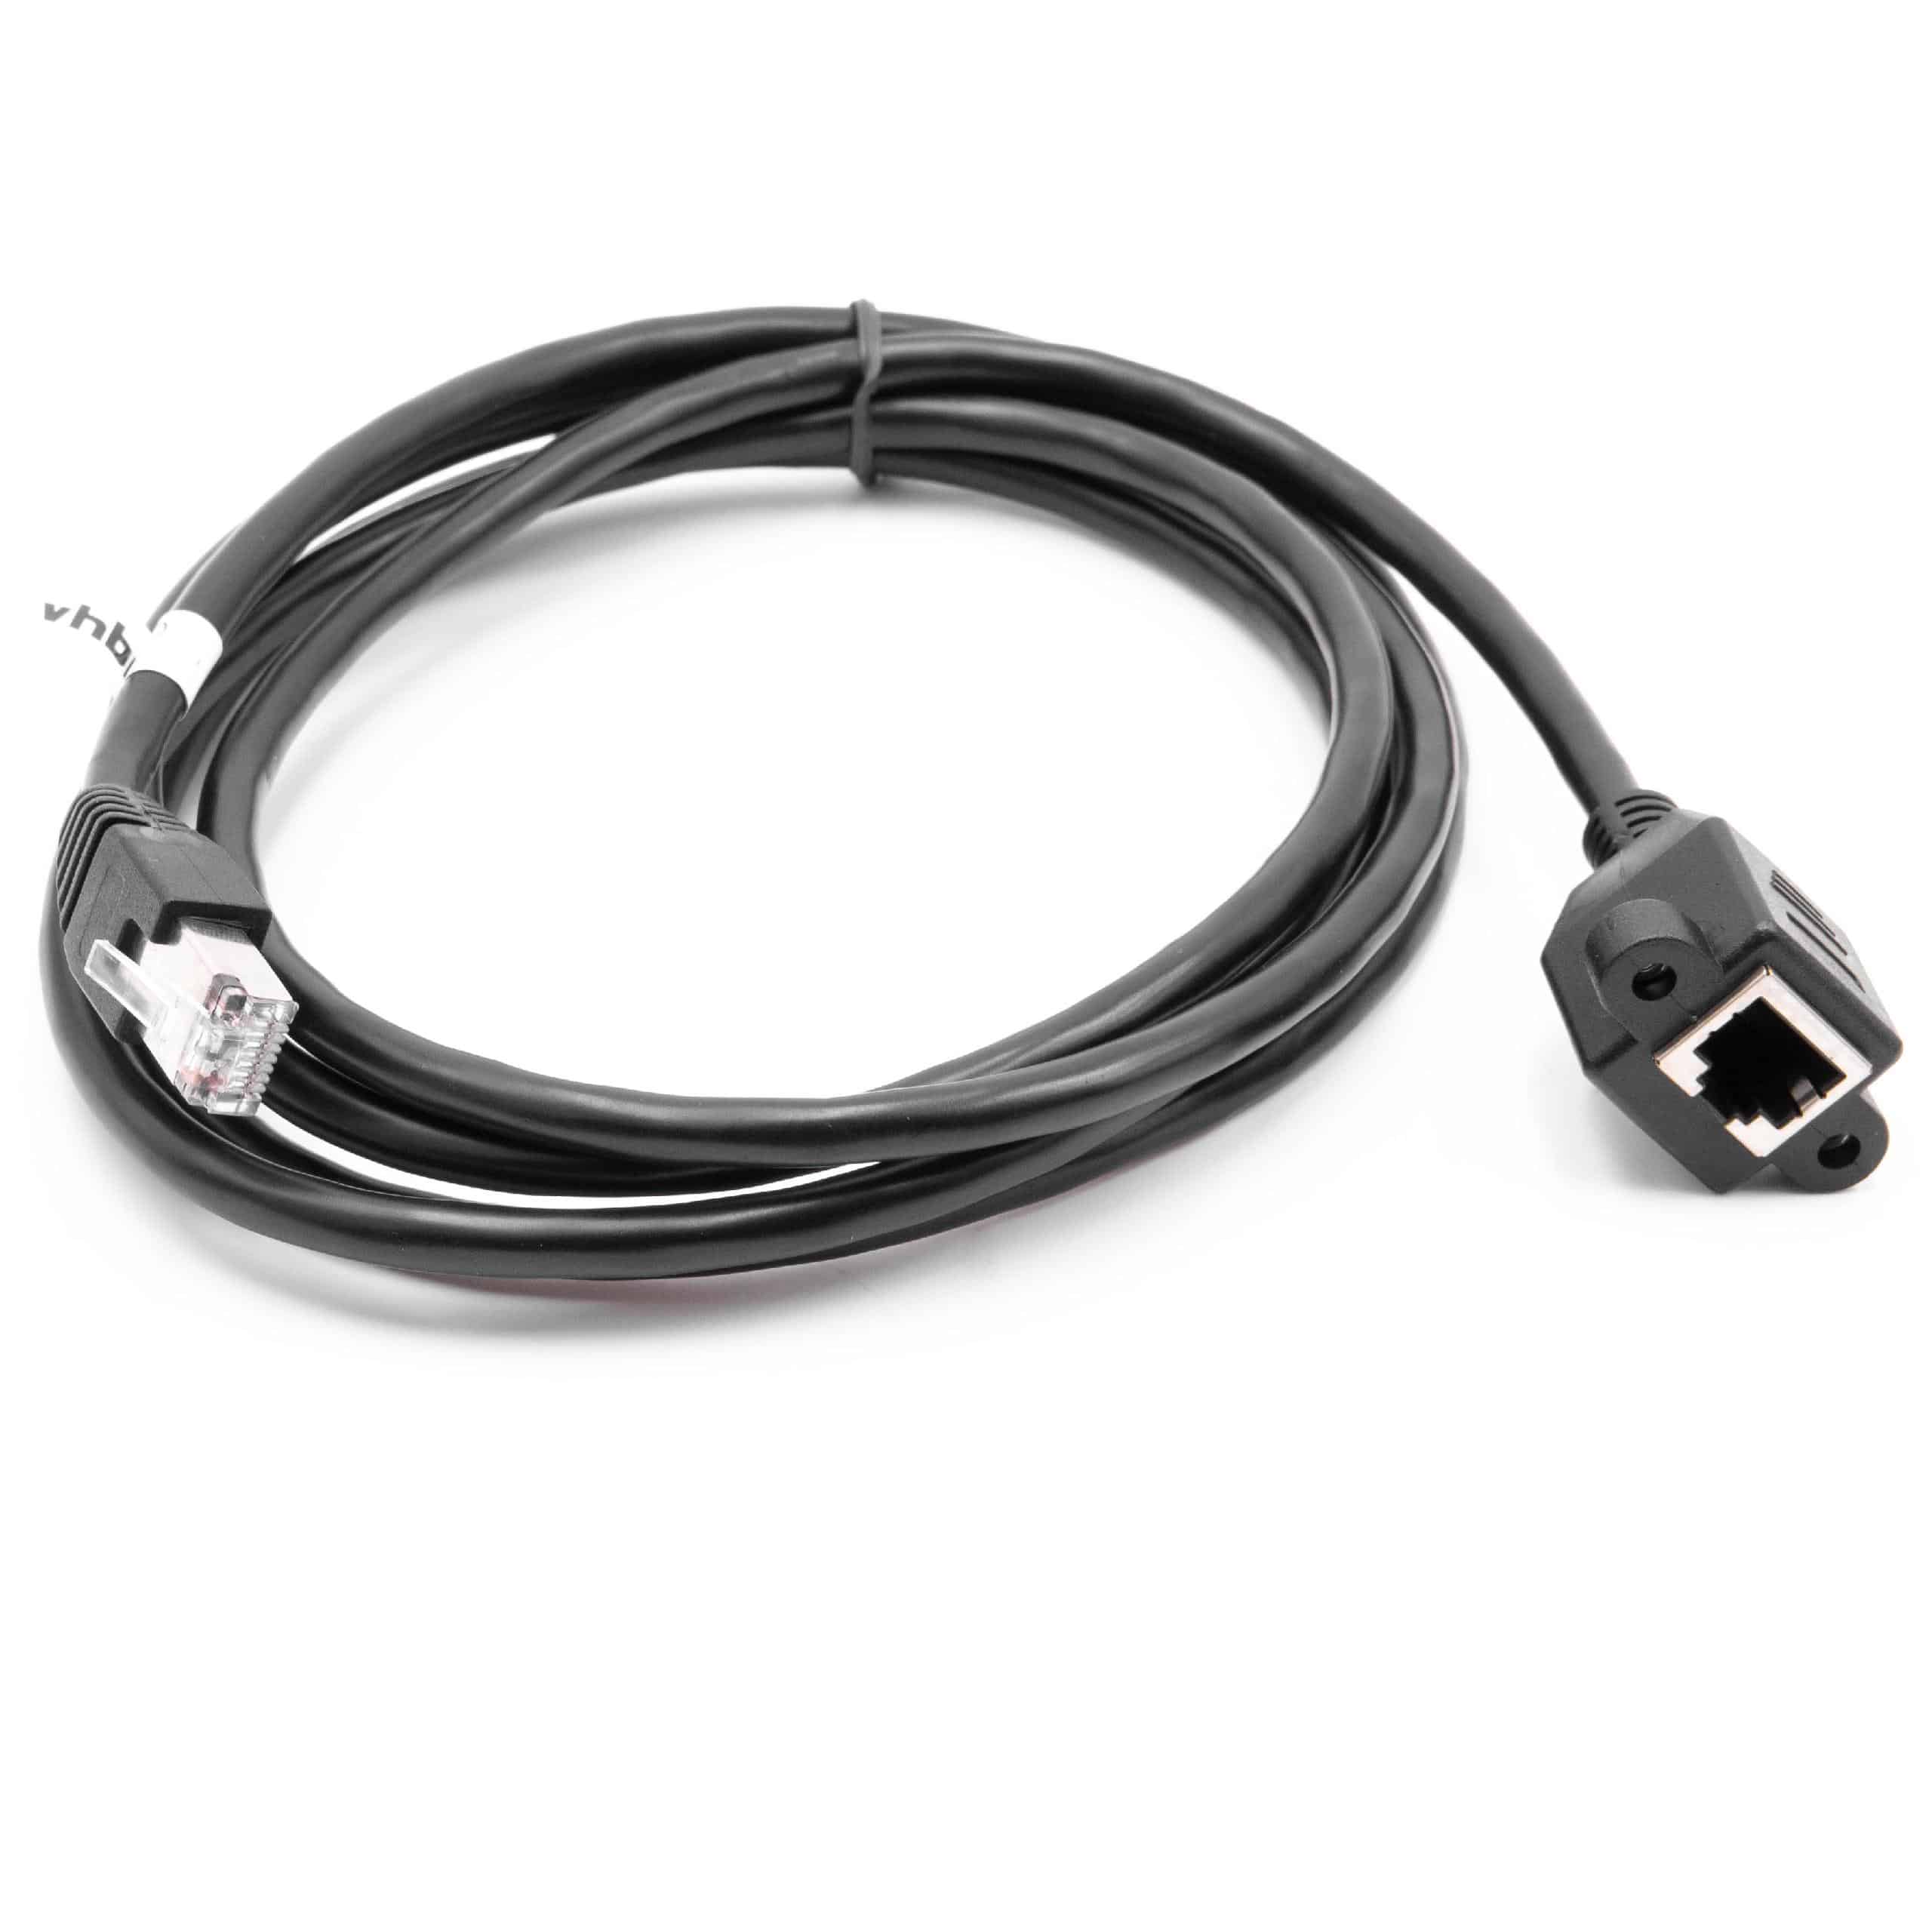 Cable de extensión Cat6, RJ45 (m) a RJ45 (h) - Cable Ethernet LAN con conector RJ45 incorporado, 2 m